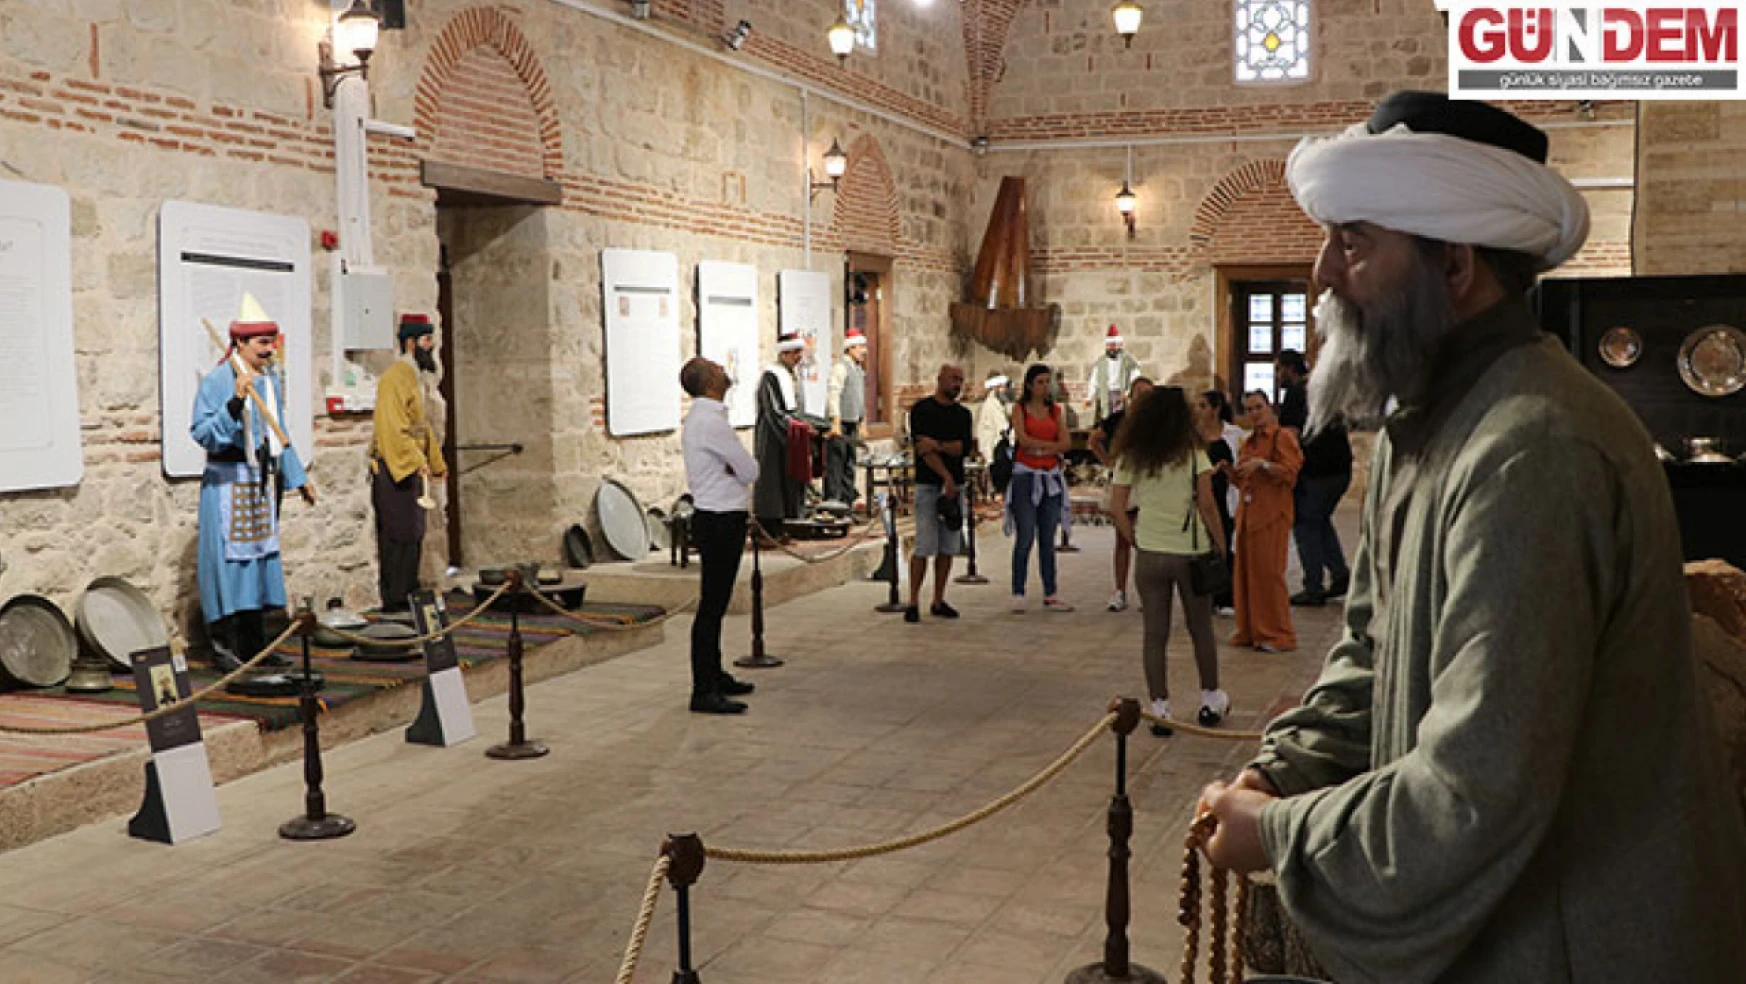 Osmanlı imaret geleneğinin yaşatıldığı müze 3 yılda 300 bin kişiyi ağırladı